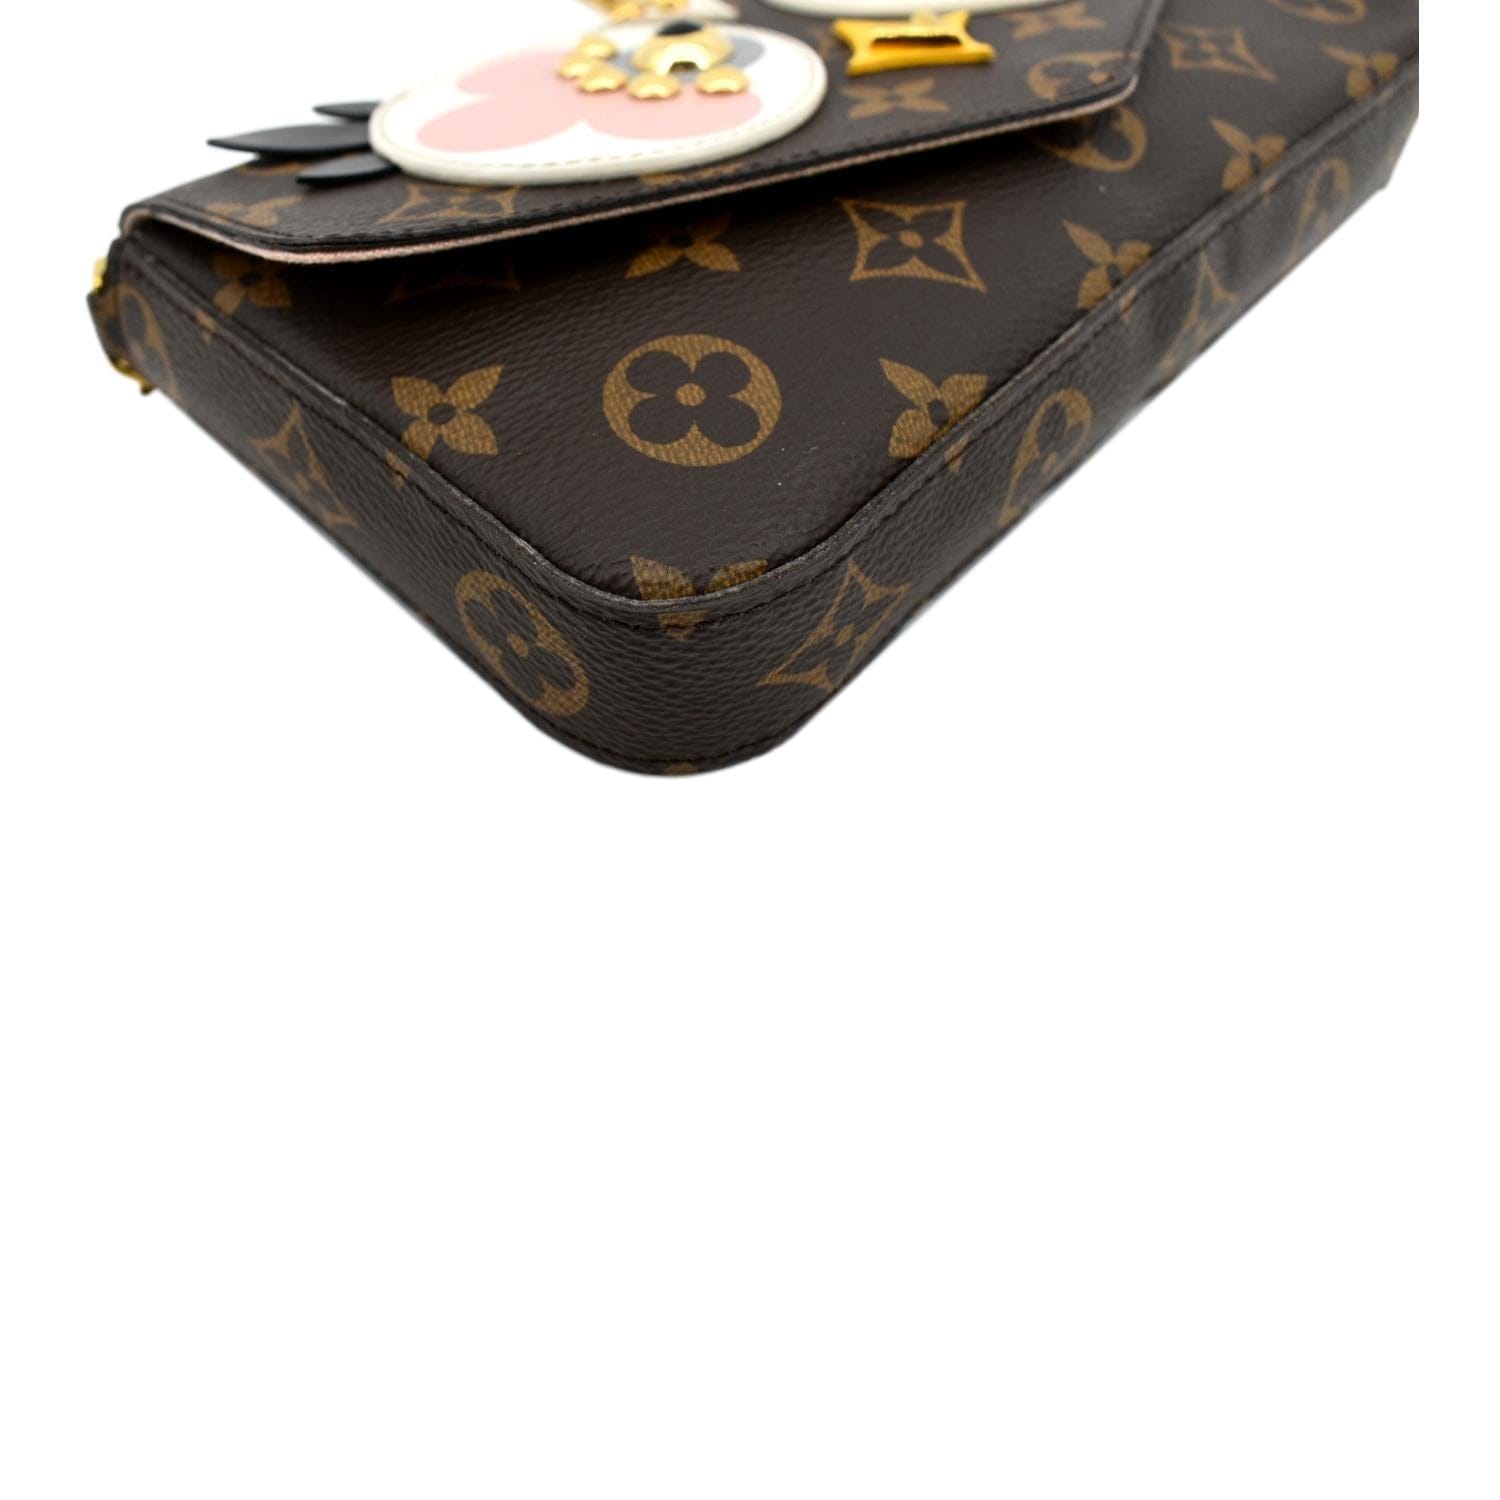 Louis Vuitton Pochette Felicie Monogram Limited Edition Owl Motif Chain Bag